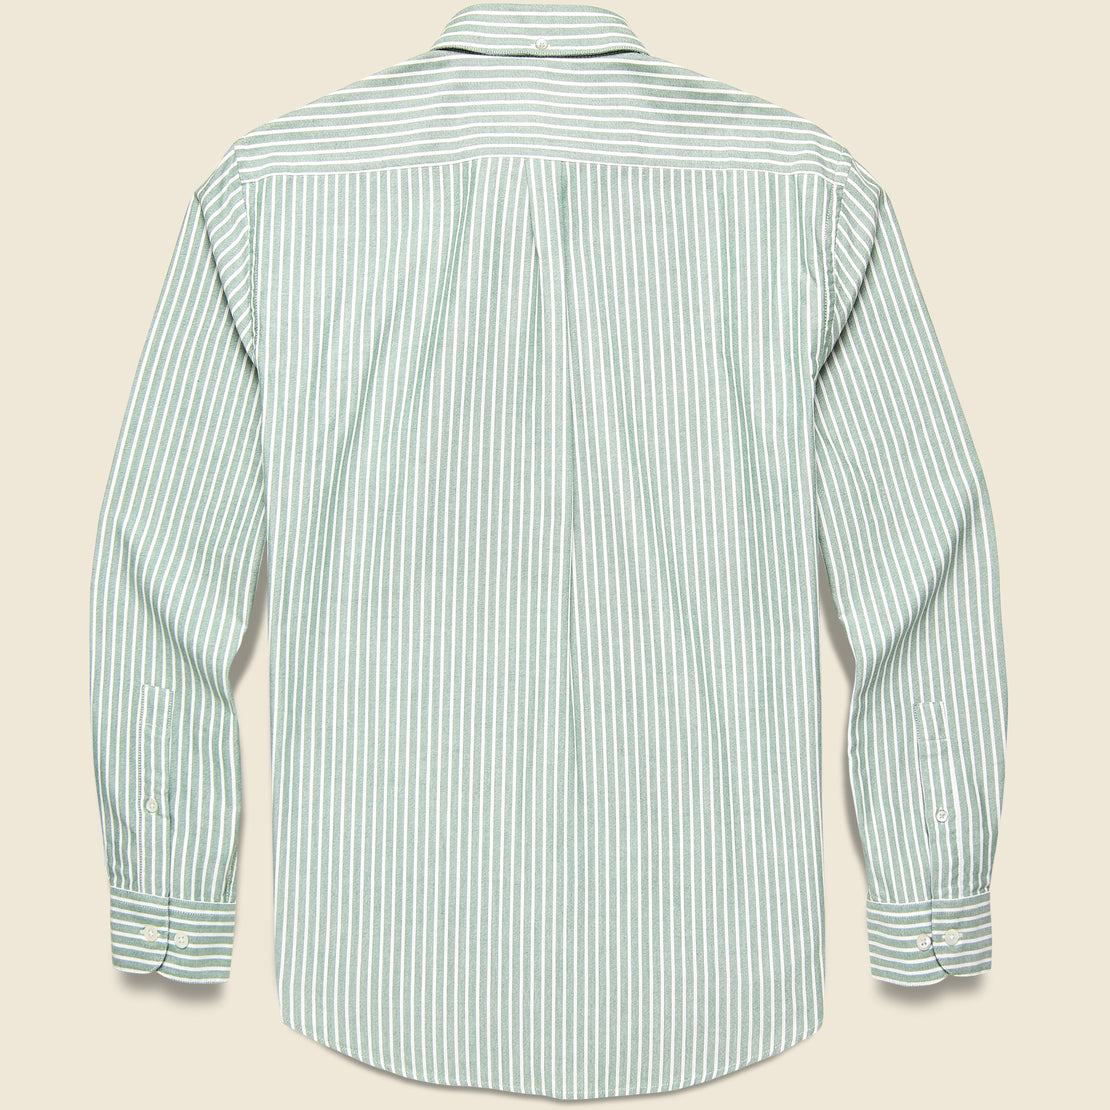 Belavista Oxford Shirt - Green Stripe - Portuguese Flannel - STAG Provisions - Tops - L/S Woven - Stripe